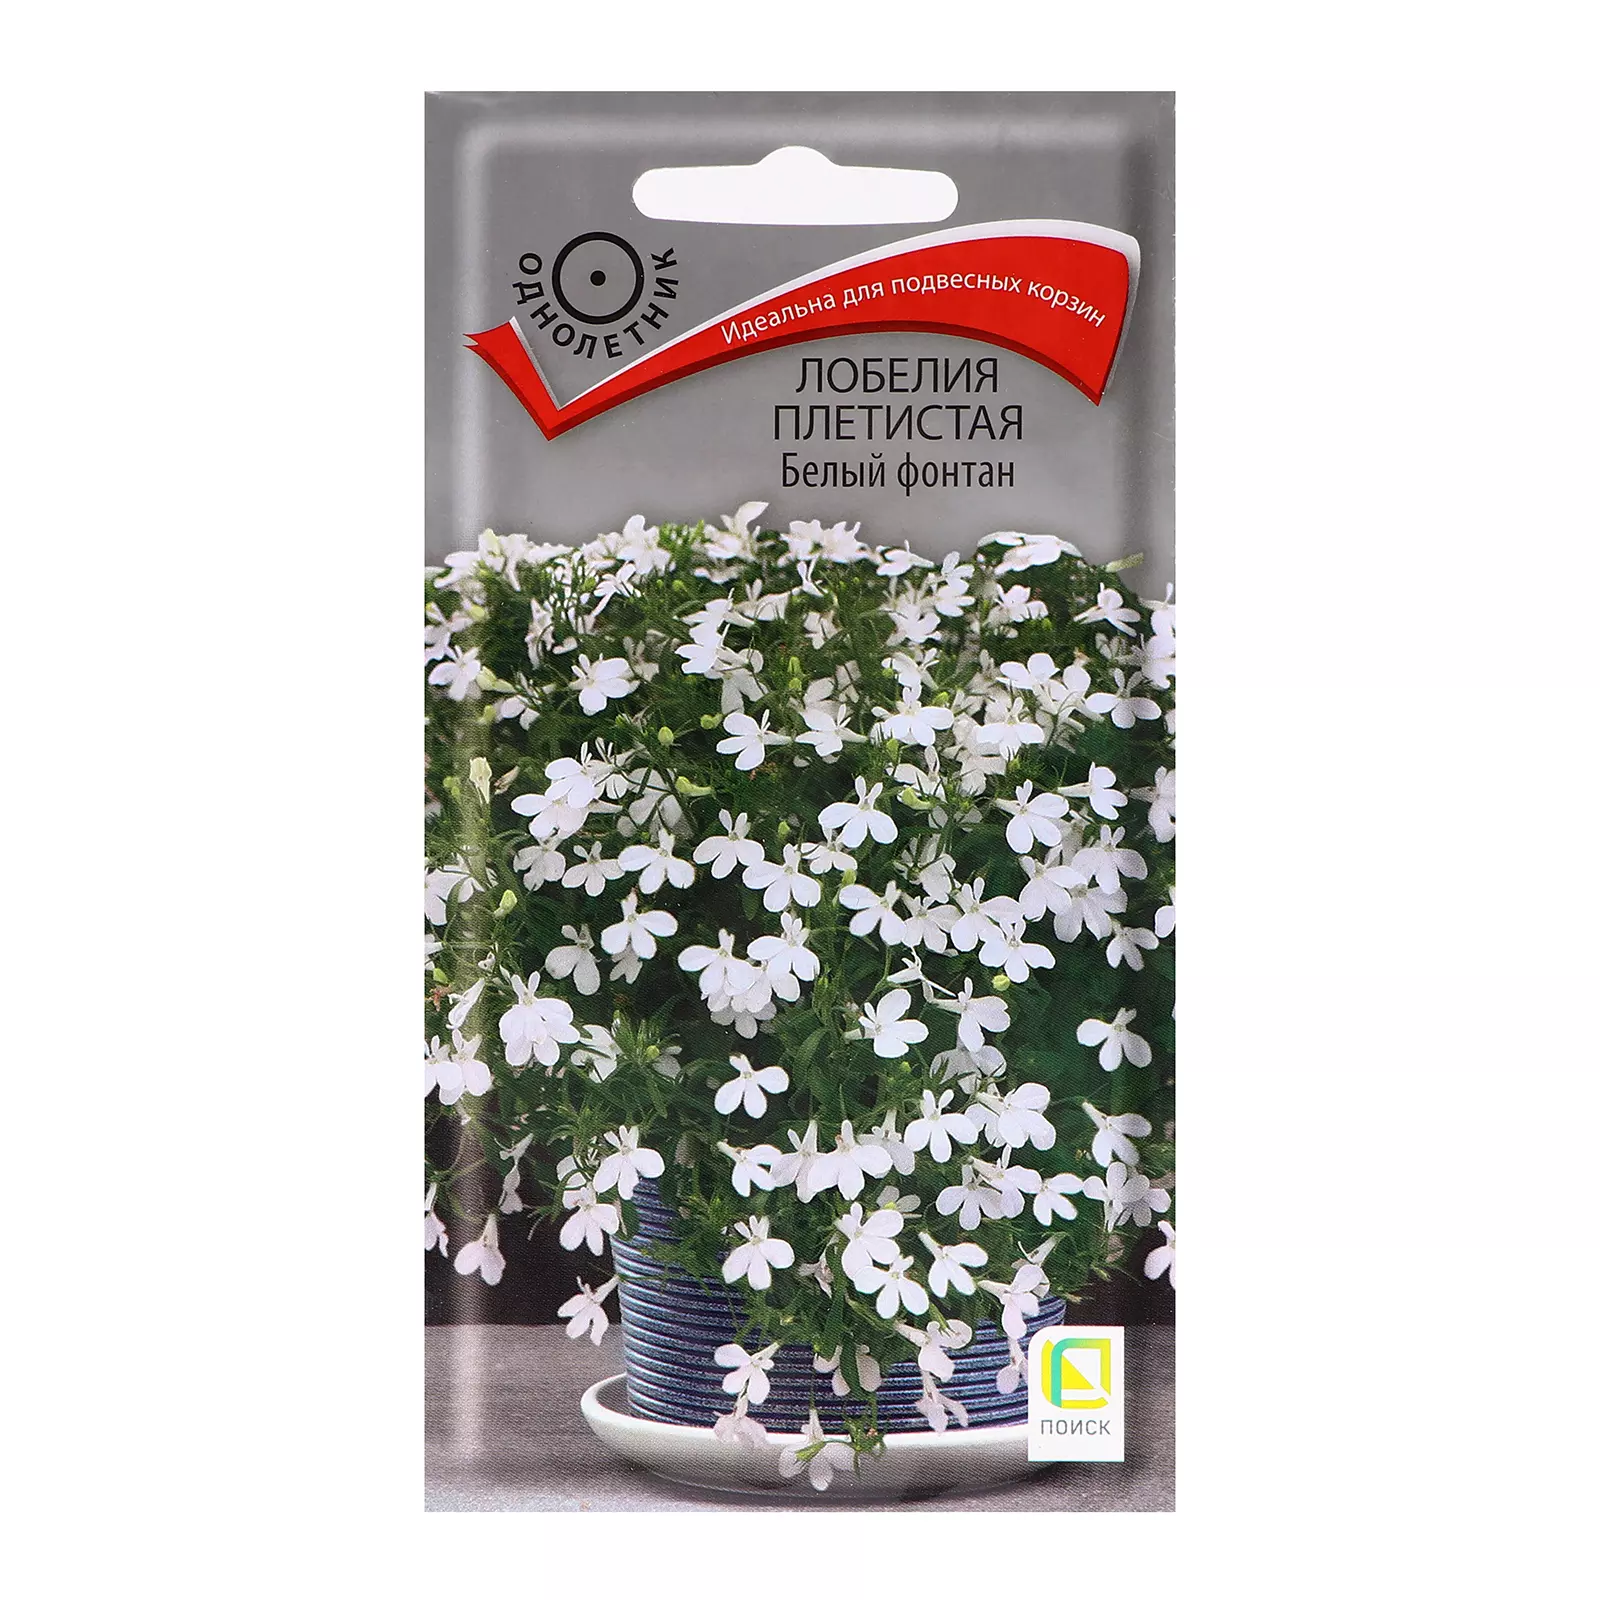 Семена цветов Лобелия фонтан белый плетистая 0.1 гр (Поиск) цв